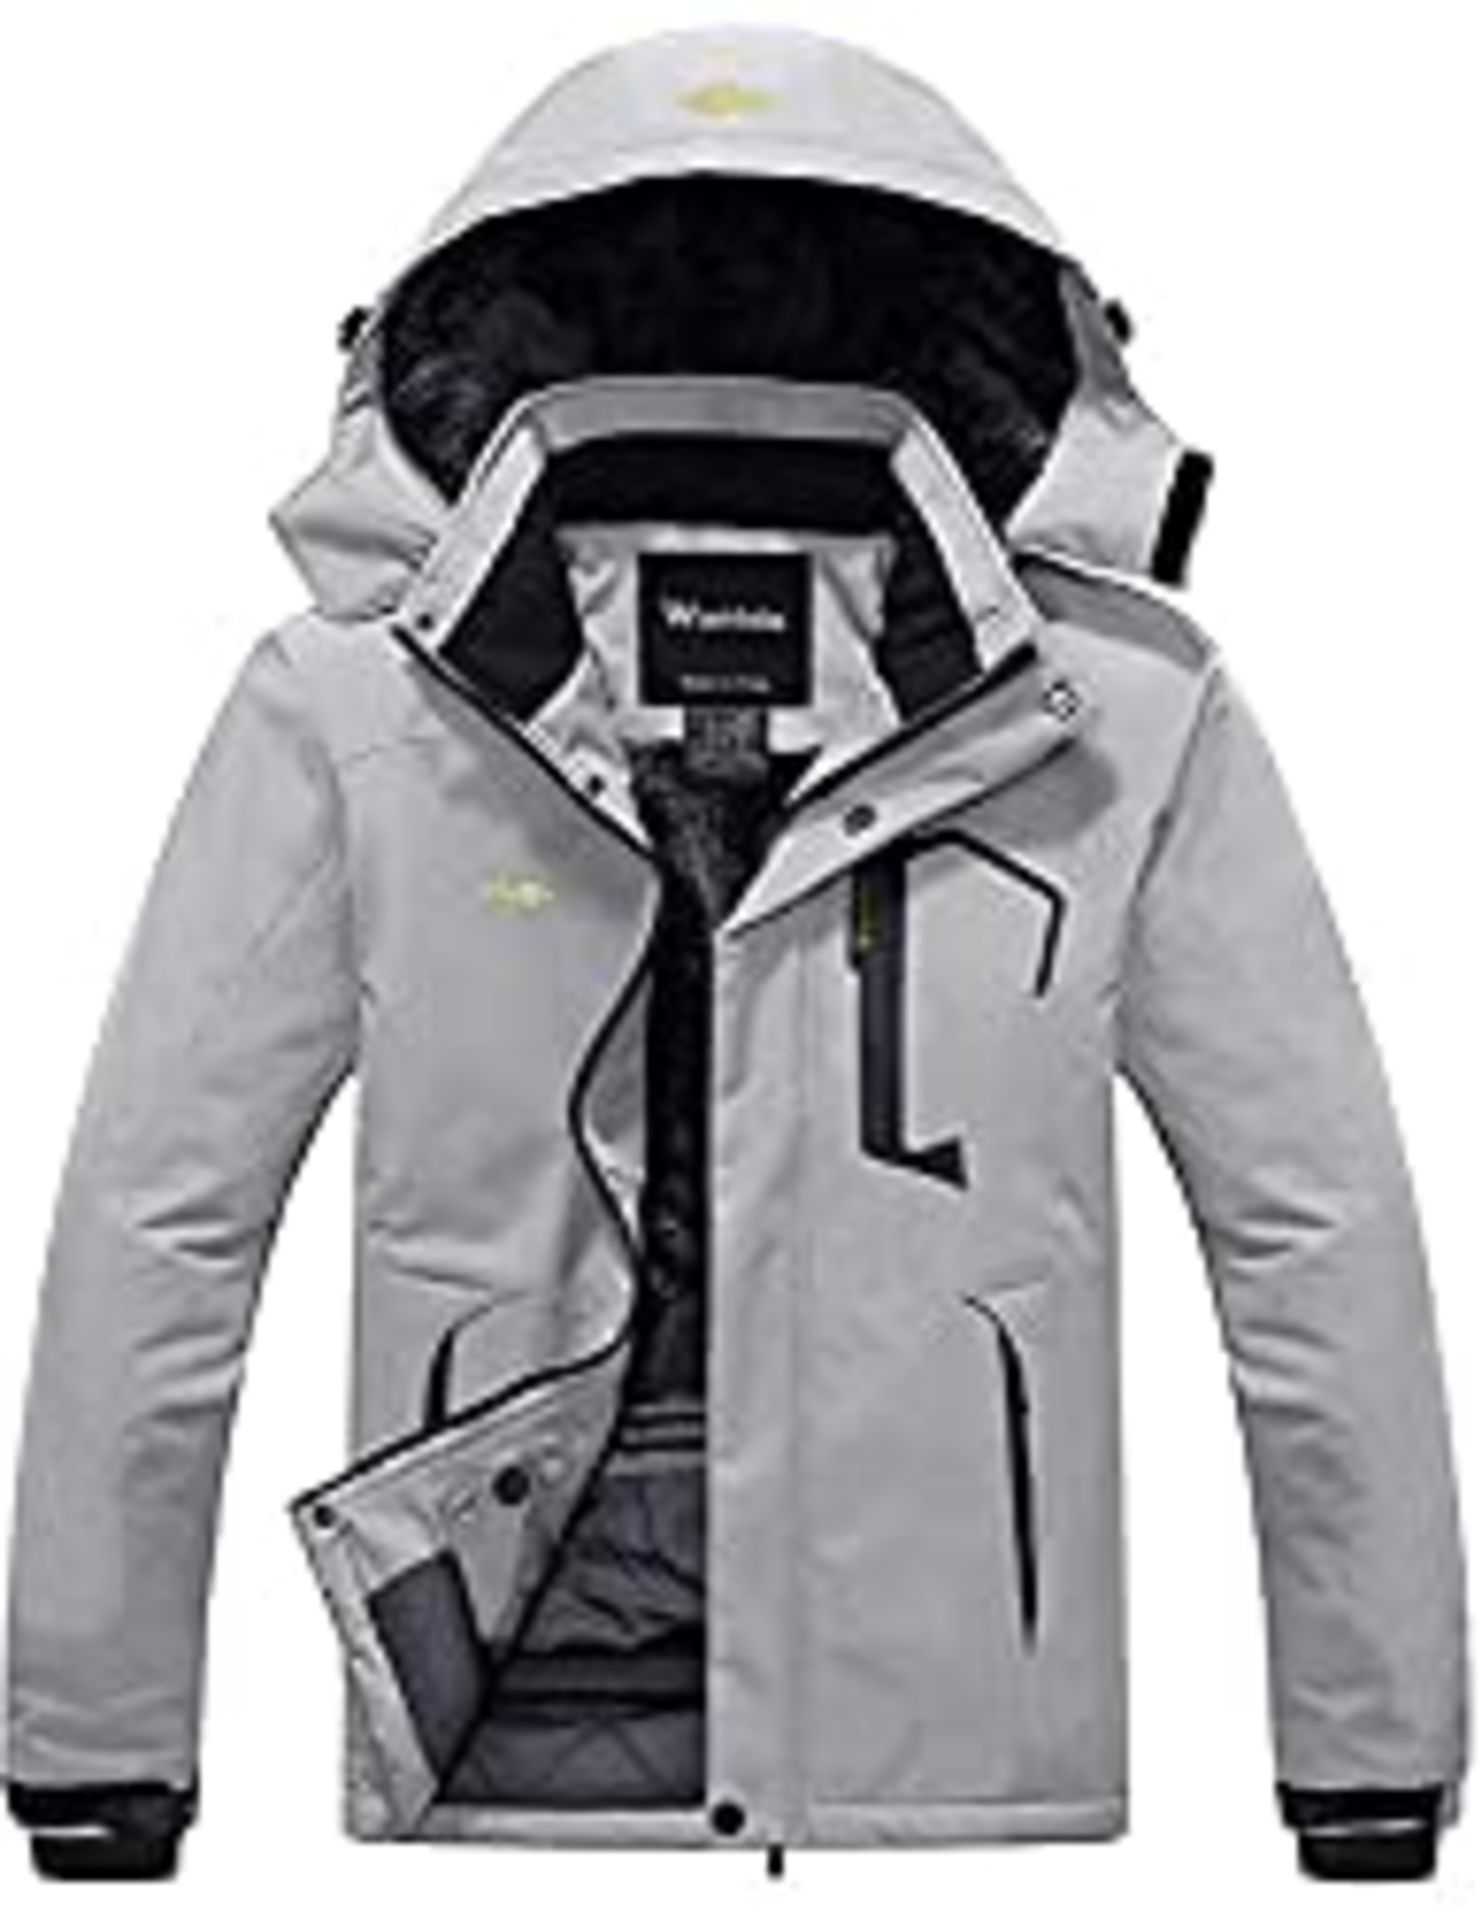 RRP £74.20 Wantdo Men's Warm Winter Jacket Mountain Ski Jacket